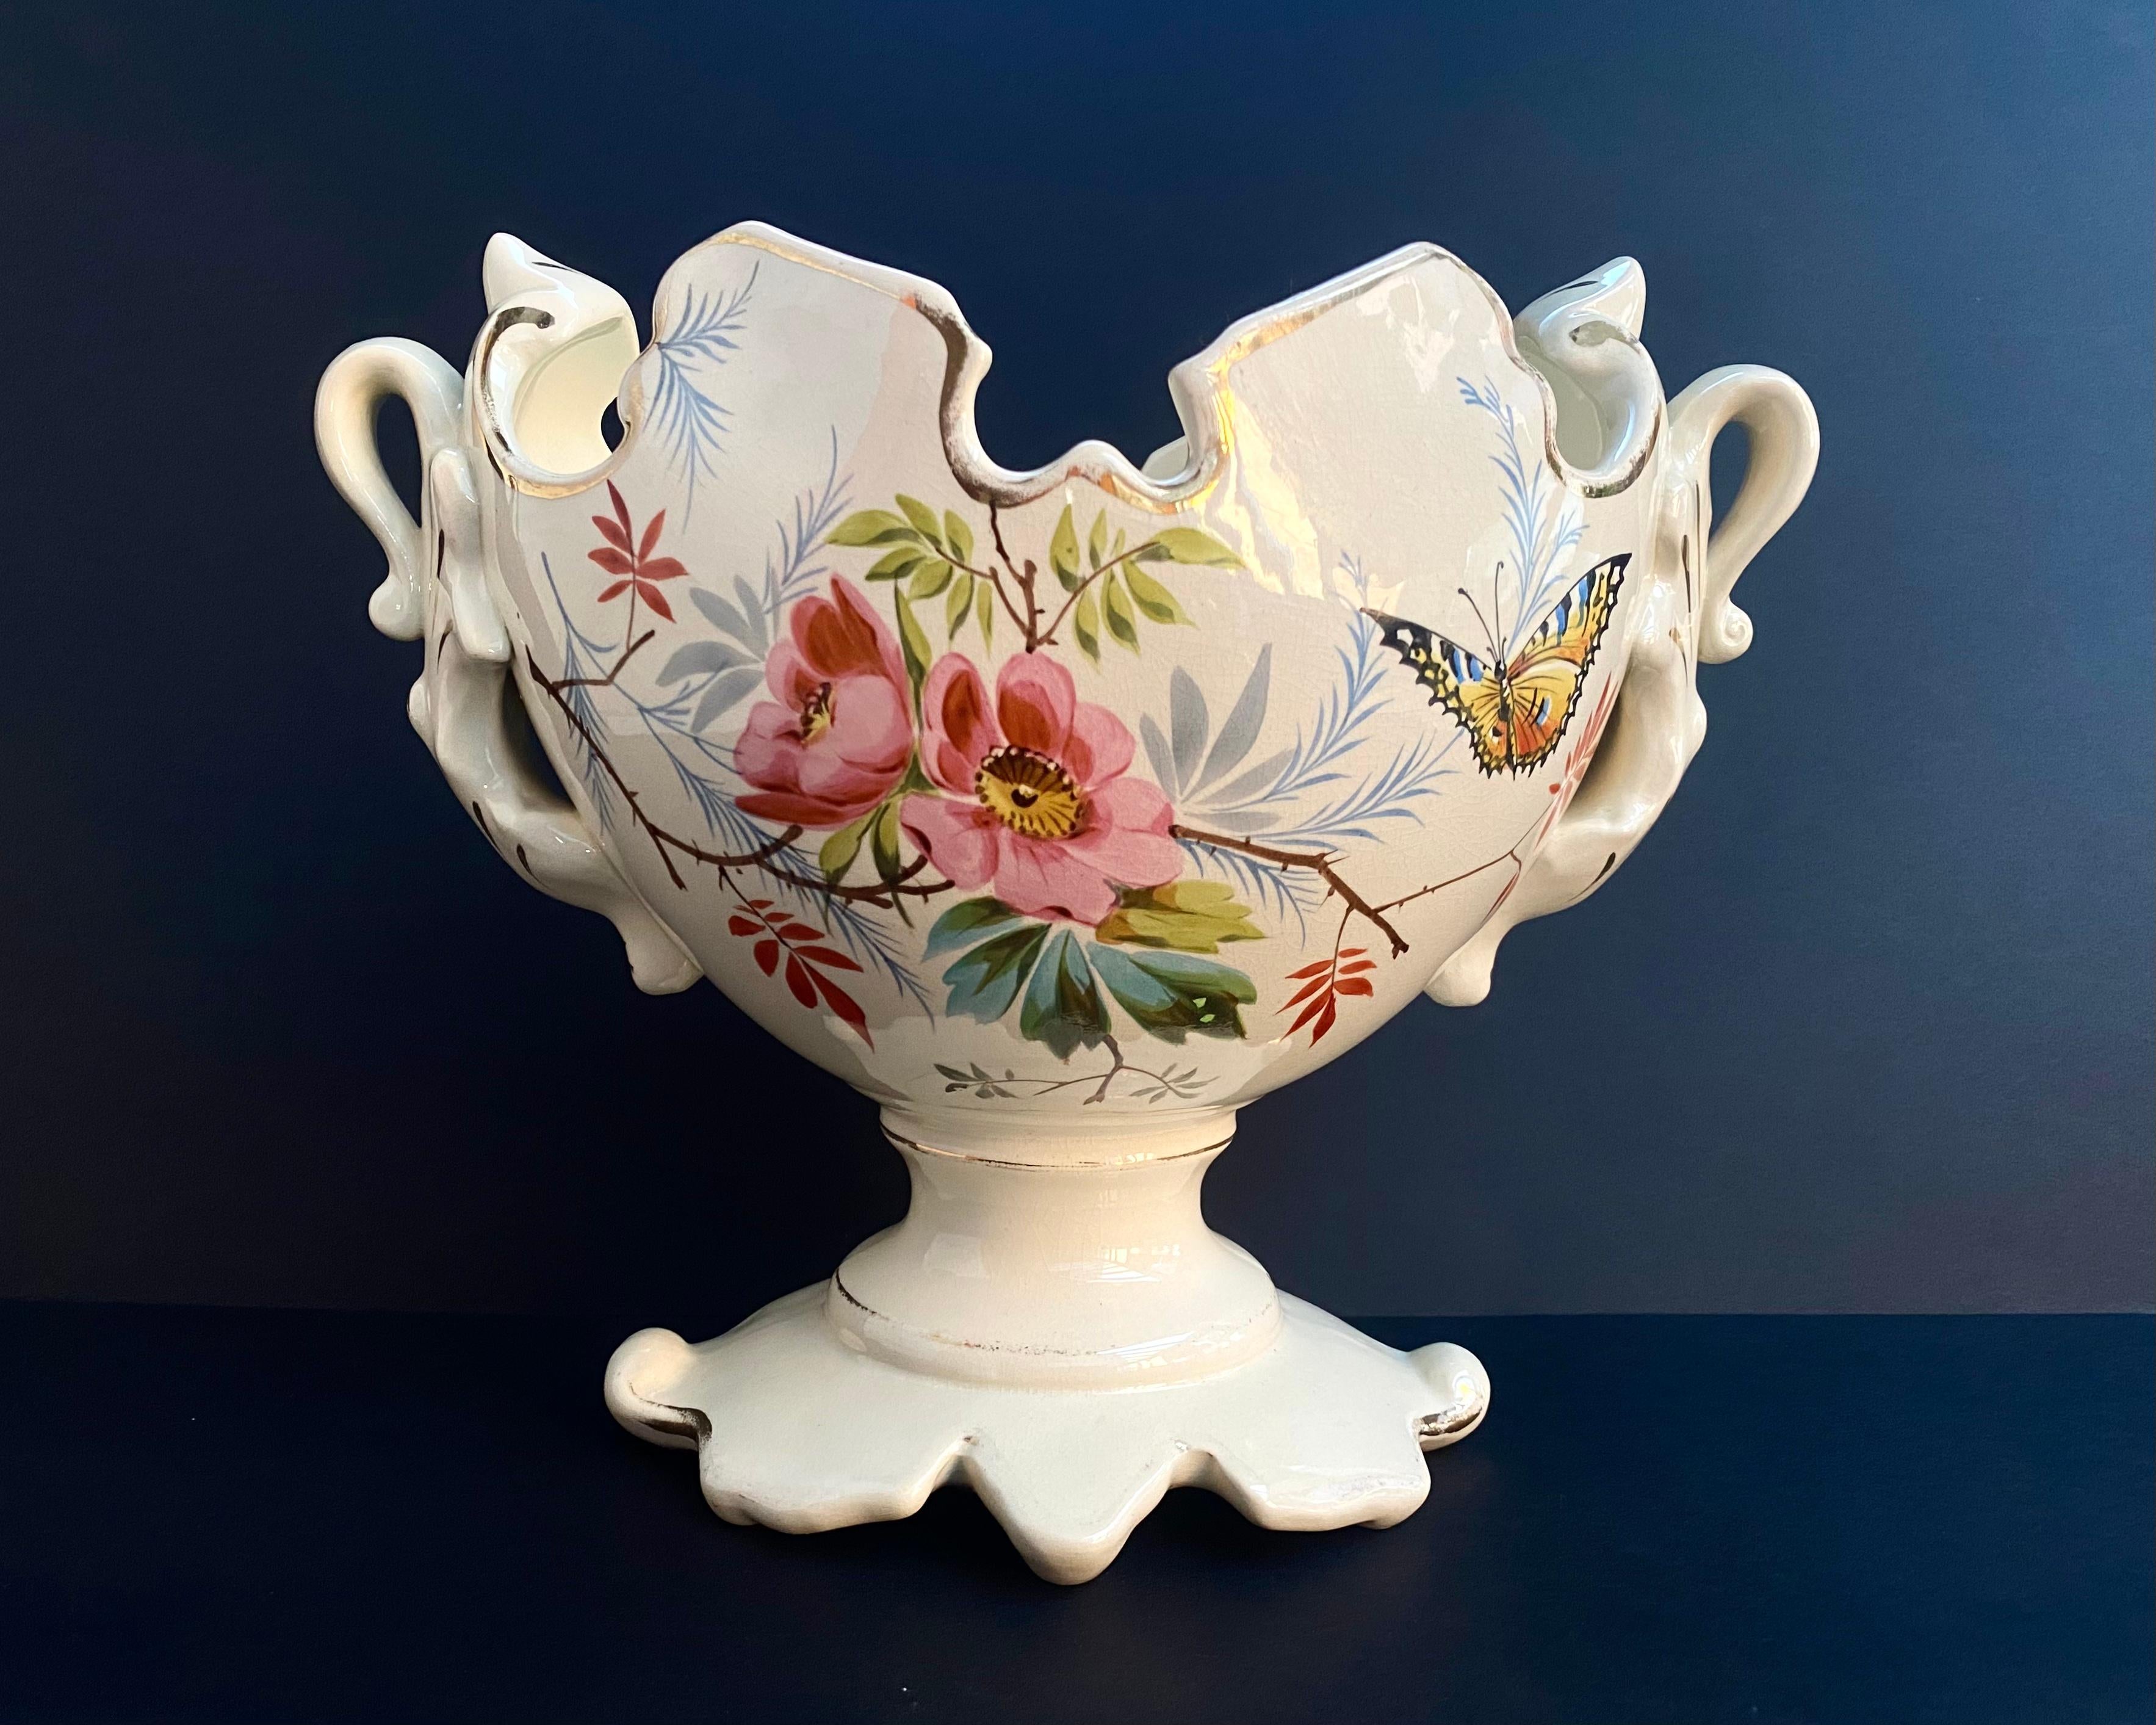 Großes französisches Pflanzgefäß aus Vintage-Keramik, Tafelaufsatz, Regency-Stil, handbemalt mit Blumen und einem Schmetterling, um 1950.

Wunderschönes handgemaltes Blumendesign auf cremefarbenem Sockel mit goldenen Rändern, mit schwanenartigen